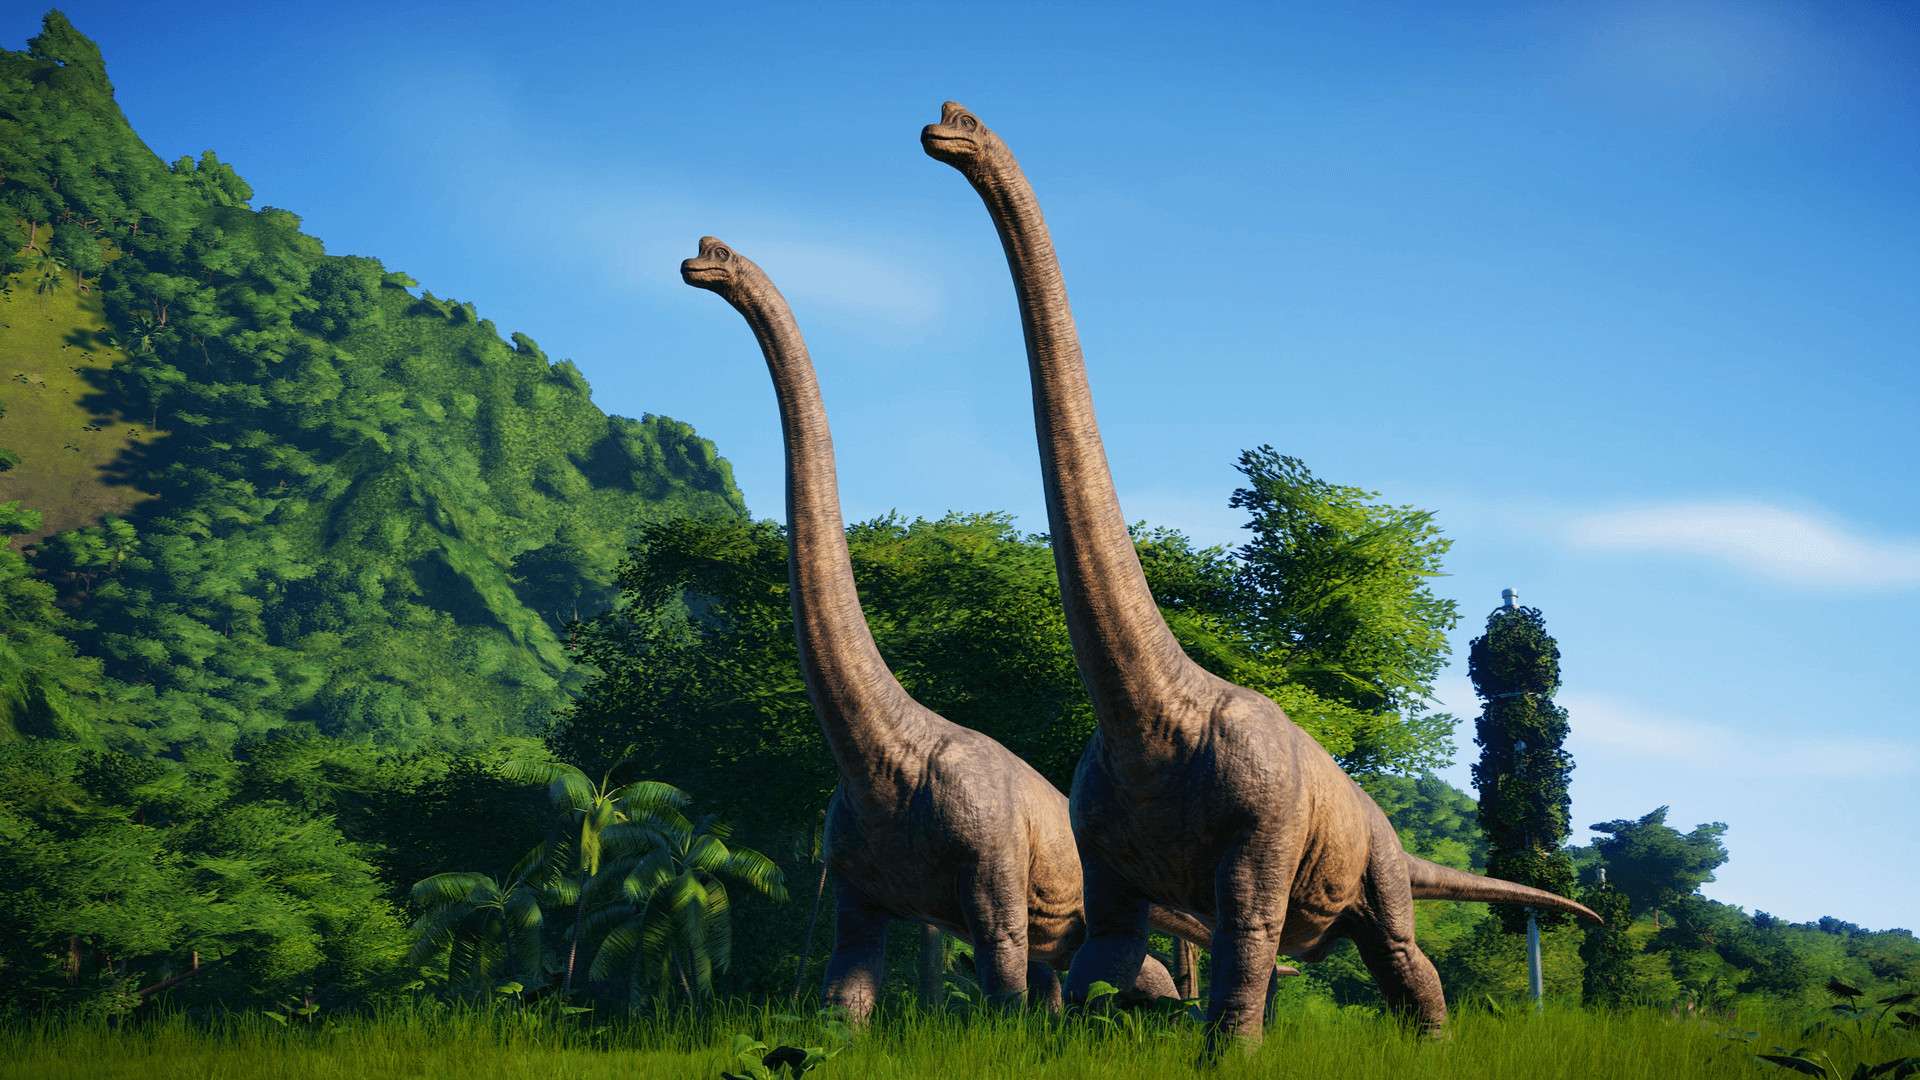 Jurassic World Evolution 2 actualización